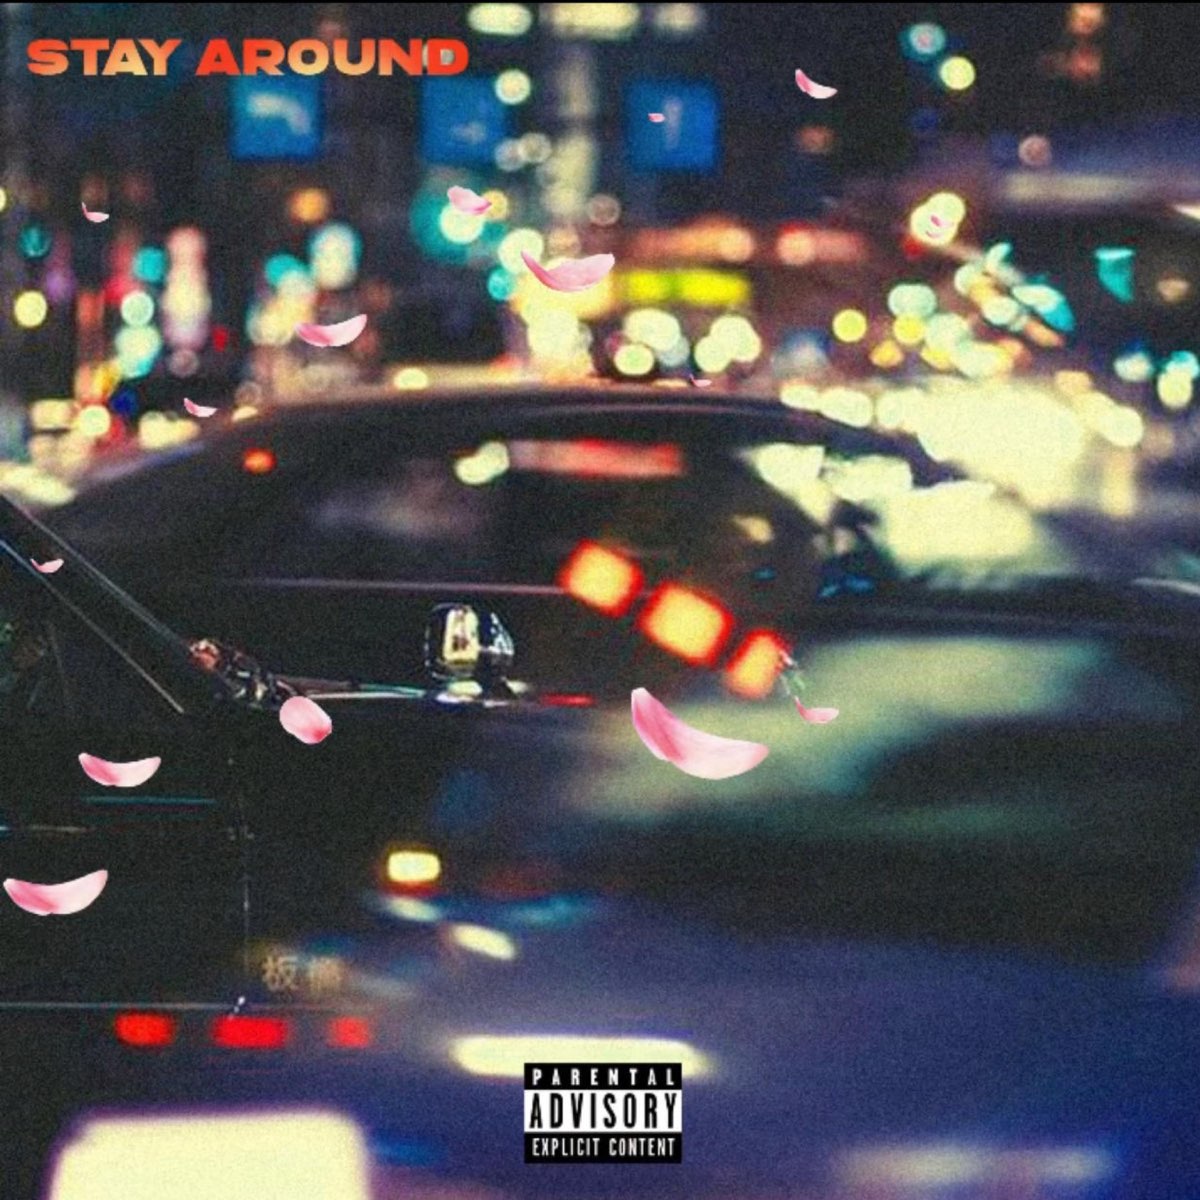 Stay around